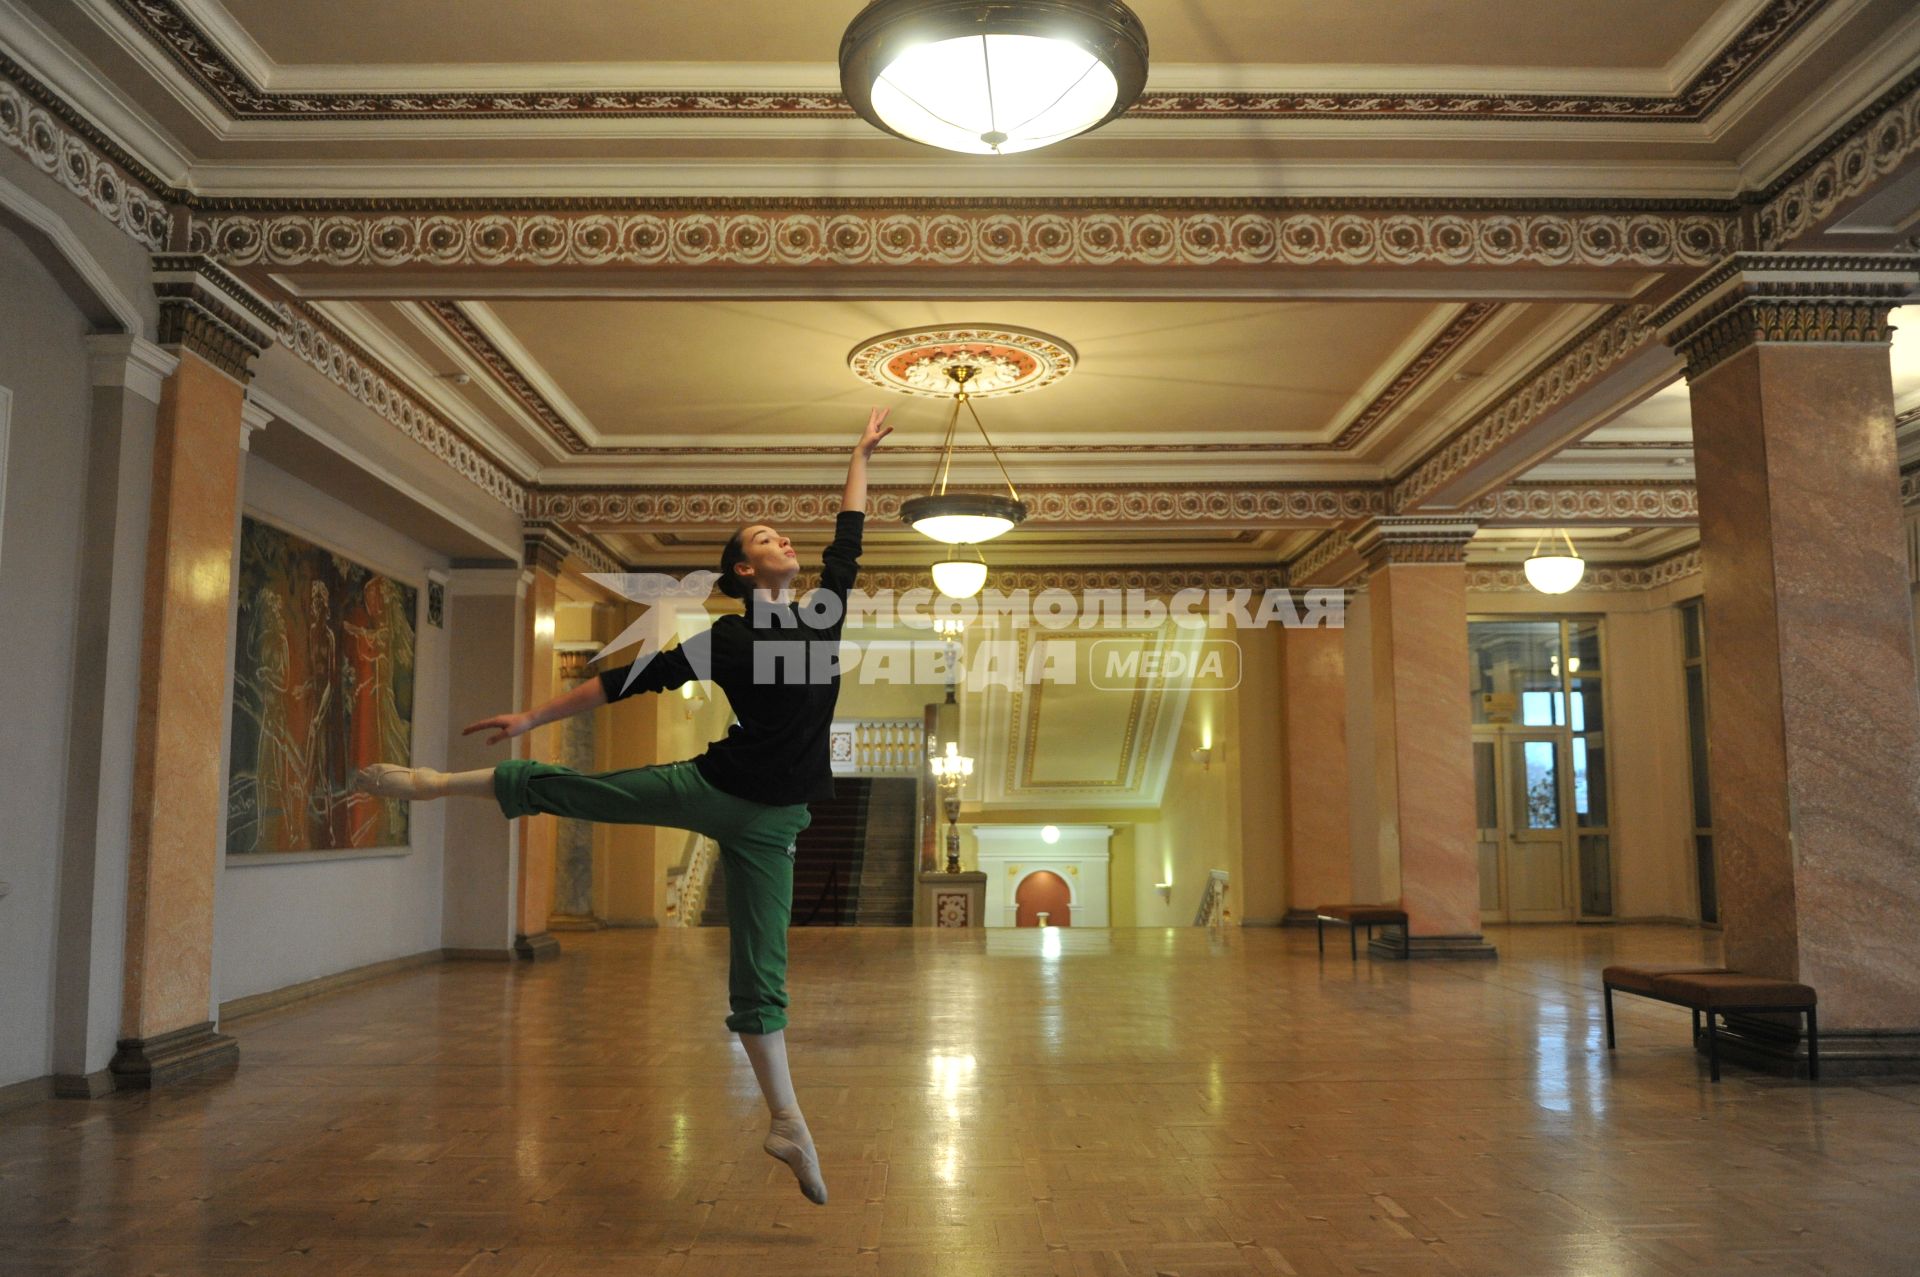 Донбасс Опера - Донецкий национальный академический театр оперы и балета имени А. Б. Соловьяненко.